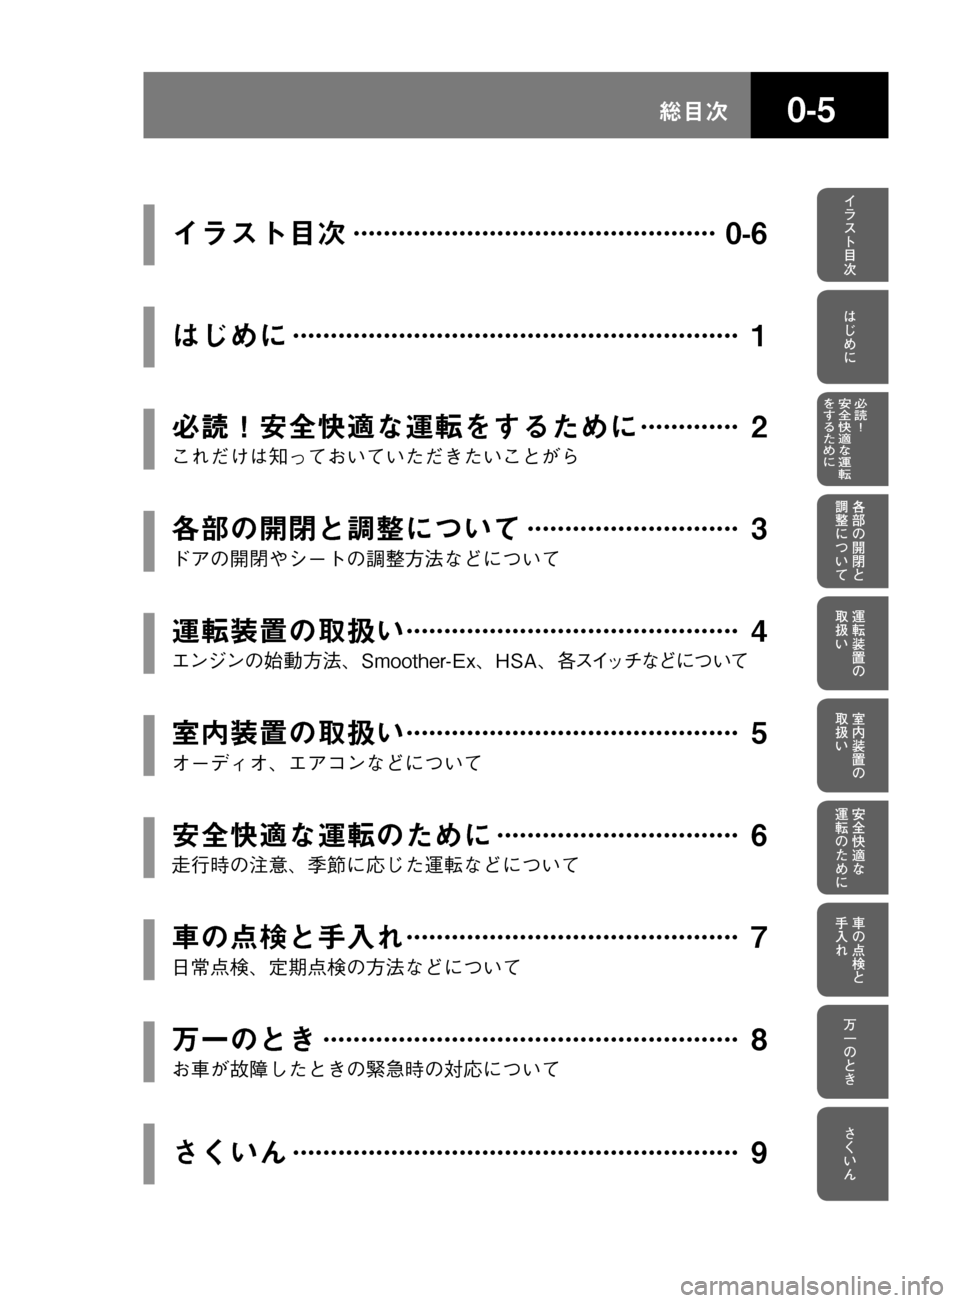 MAZDA MODEL TITAN 2013  タイタン｜取扱説明書 (in Japanese) ���
xa